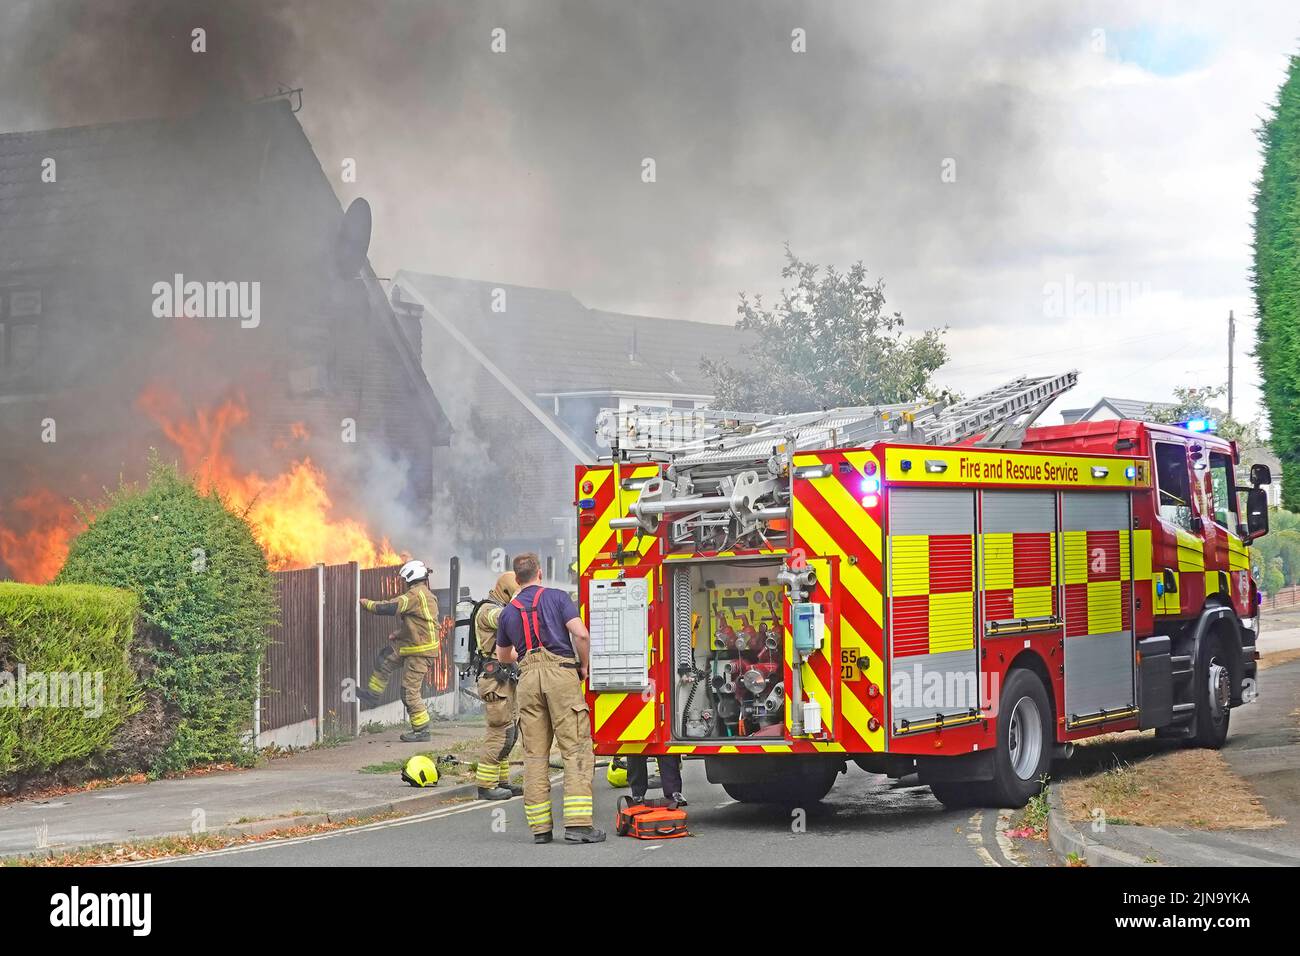 Servicios de bomberos y rescate de Essex bomberos asistentes a la quema de casa en incendio con brigada de bomberos licitación en asistencia Inglaterra Reino Unido Foto de stock